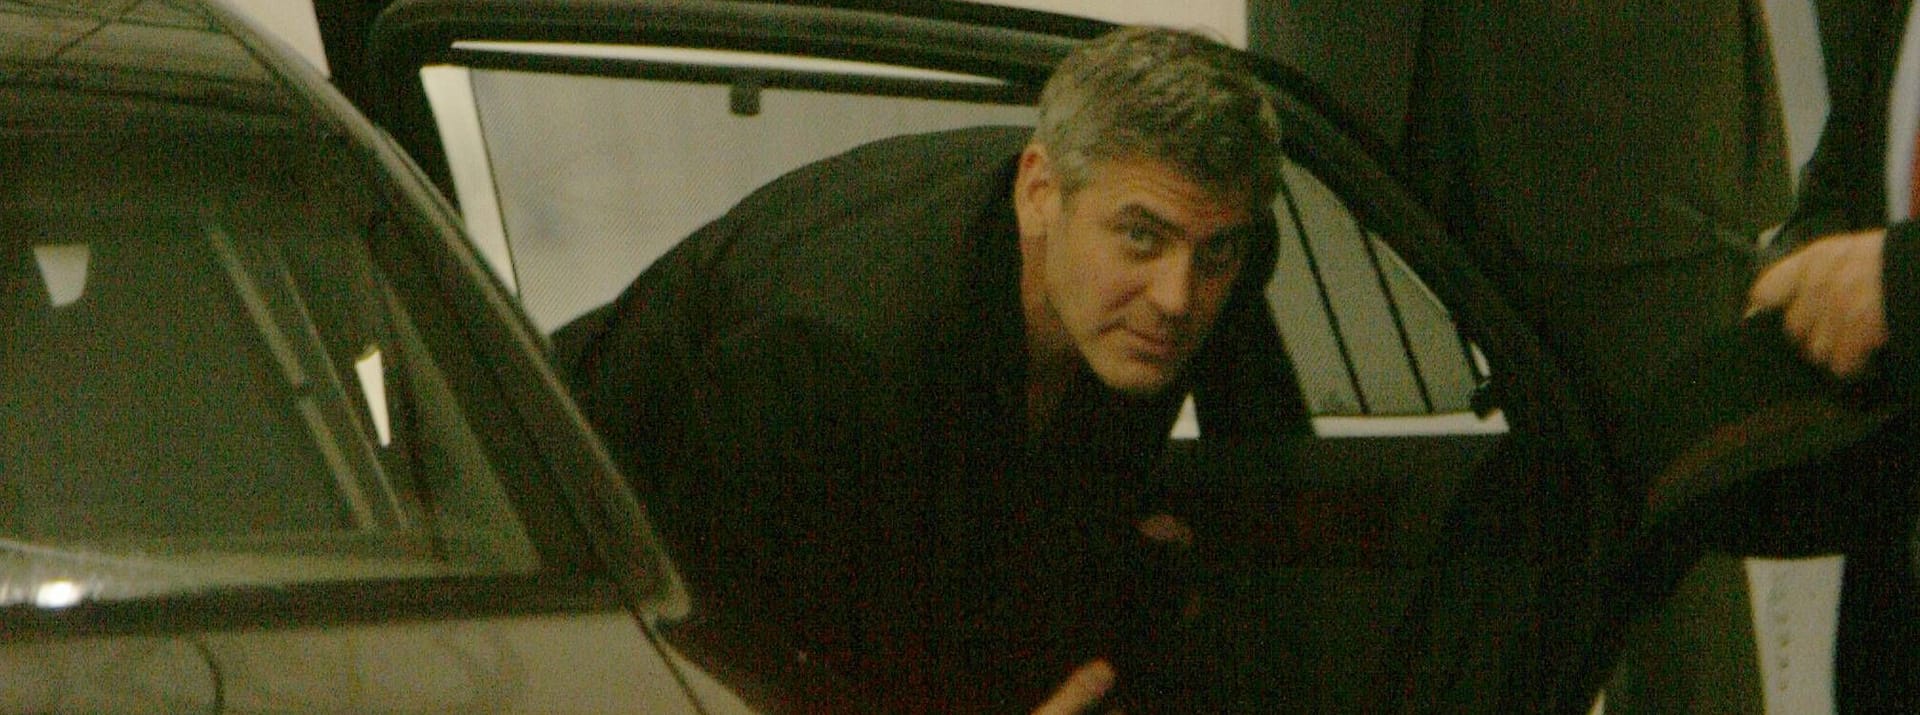 Die Berlinale lockt immer wieder Weltstars nach Berlin. Hier erwischten Fotografen 2006 George Clooney, wie er nach der Premierenparty vor dem Regent-Hotel aussteigt.